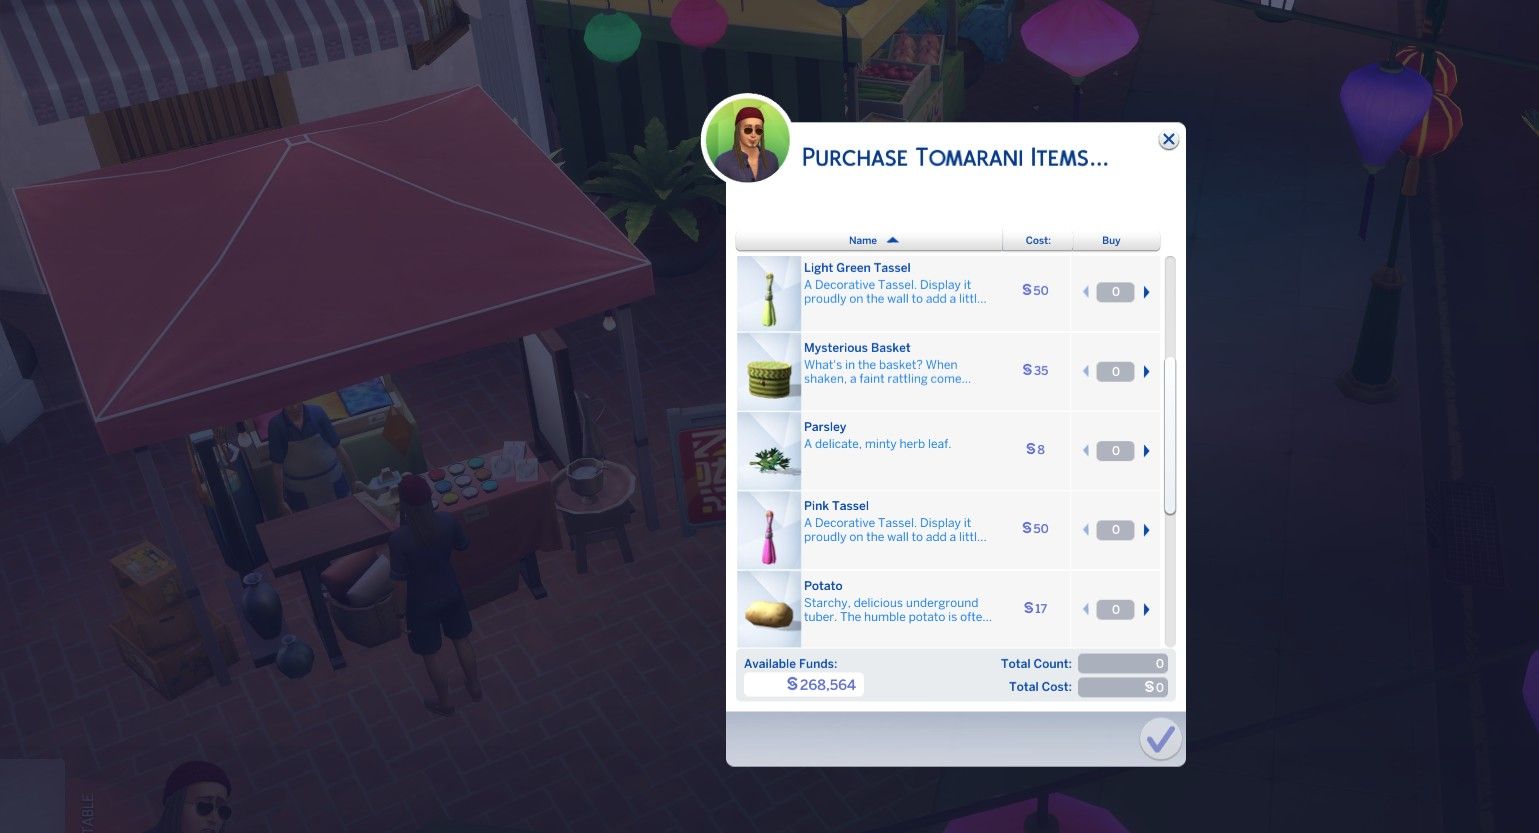 покупка двух кисточек на прилавке ночного рынка в Томаранге The Sims 4 в аренду